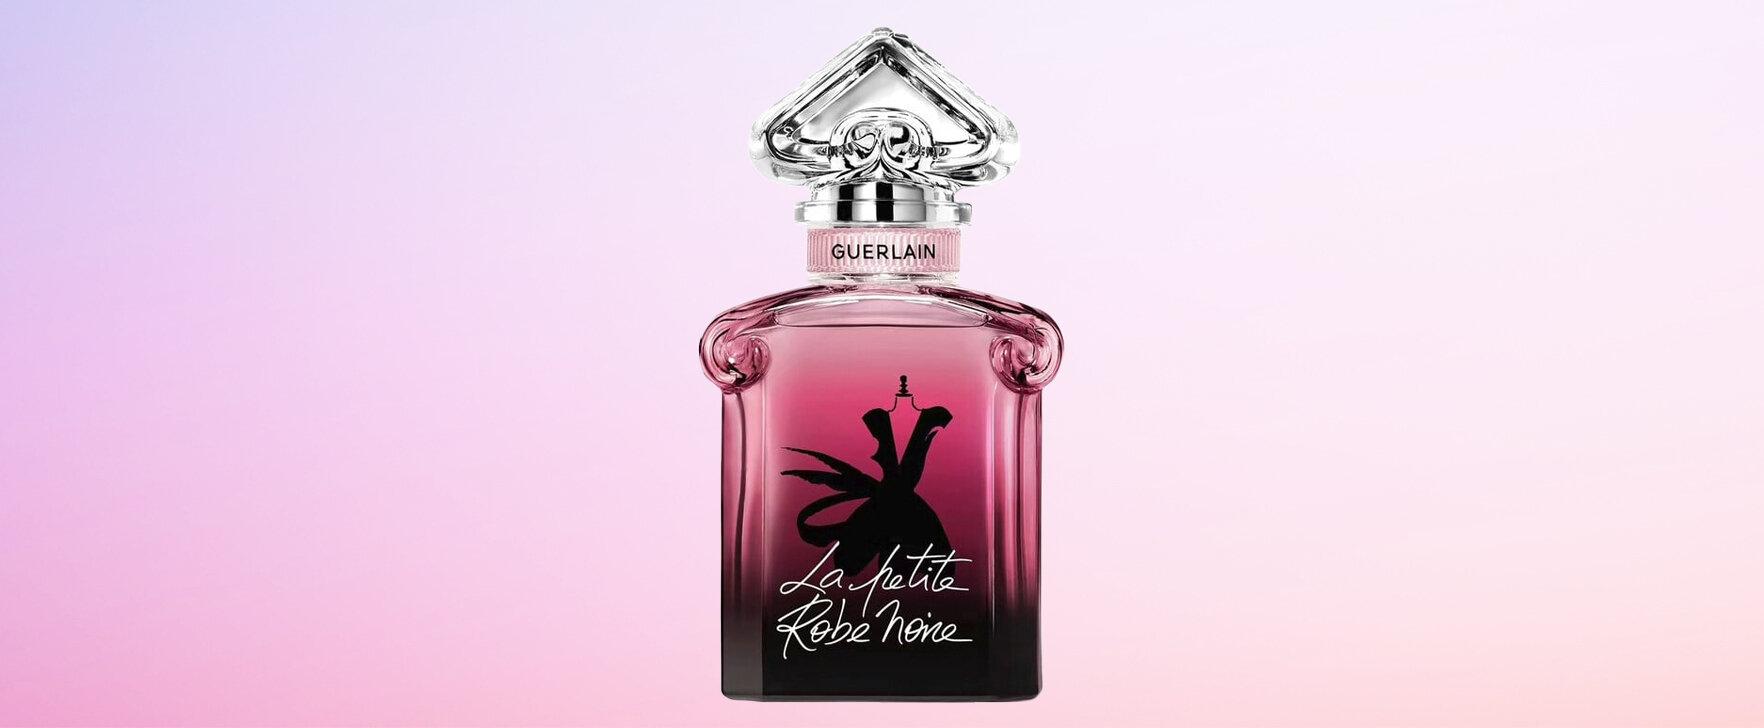 The Essence of Rose: The Women's Fragrance La Petite Robe Noire (Eau de Parfum Absolue) by Guerlain